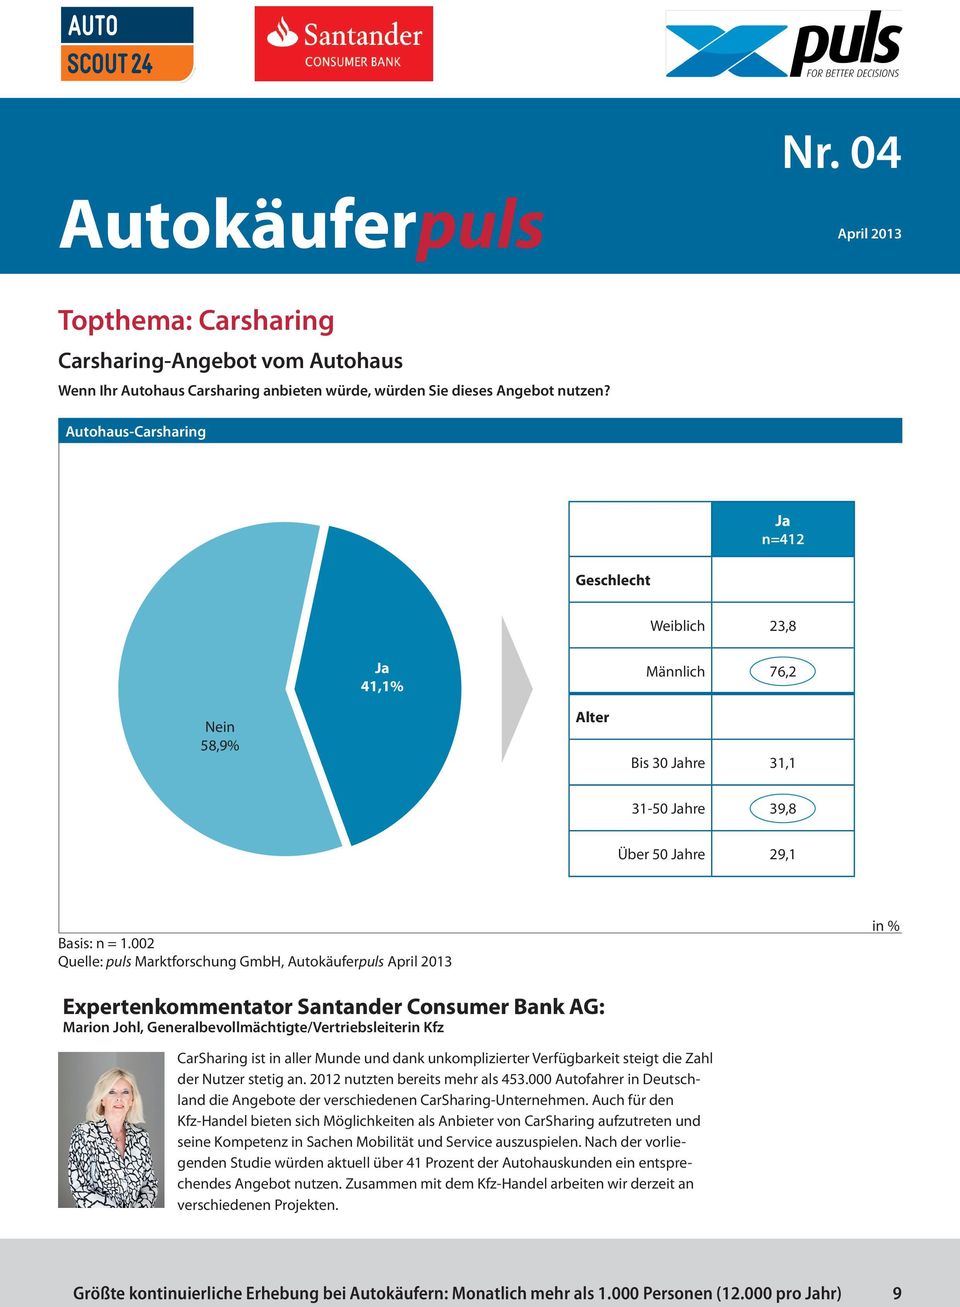 002 Quelle: puls Marktforschung GmbH, Expertenkommentator Santander Consumer Bank AG: Marion Johl, Generalbevollmächtigte/Vertriebsleiterin Kfz CarSharing ist in aller Munde und dank unkomplizierter